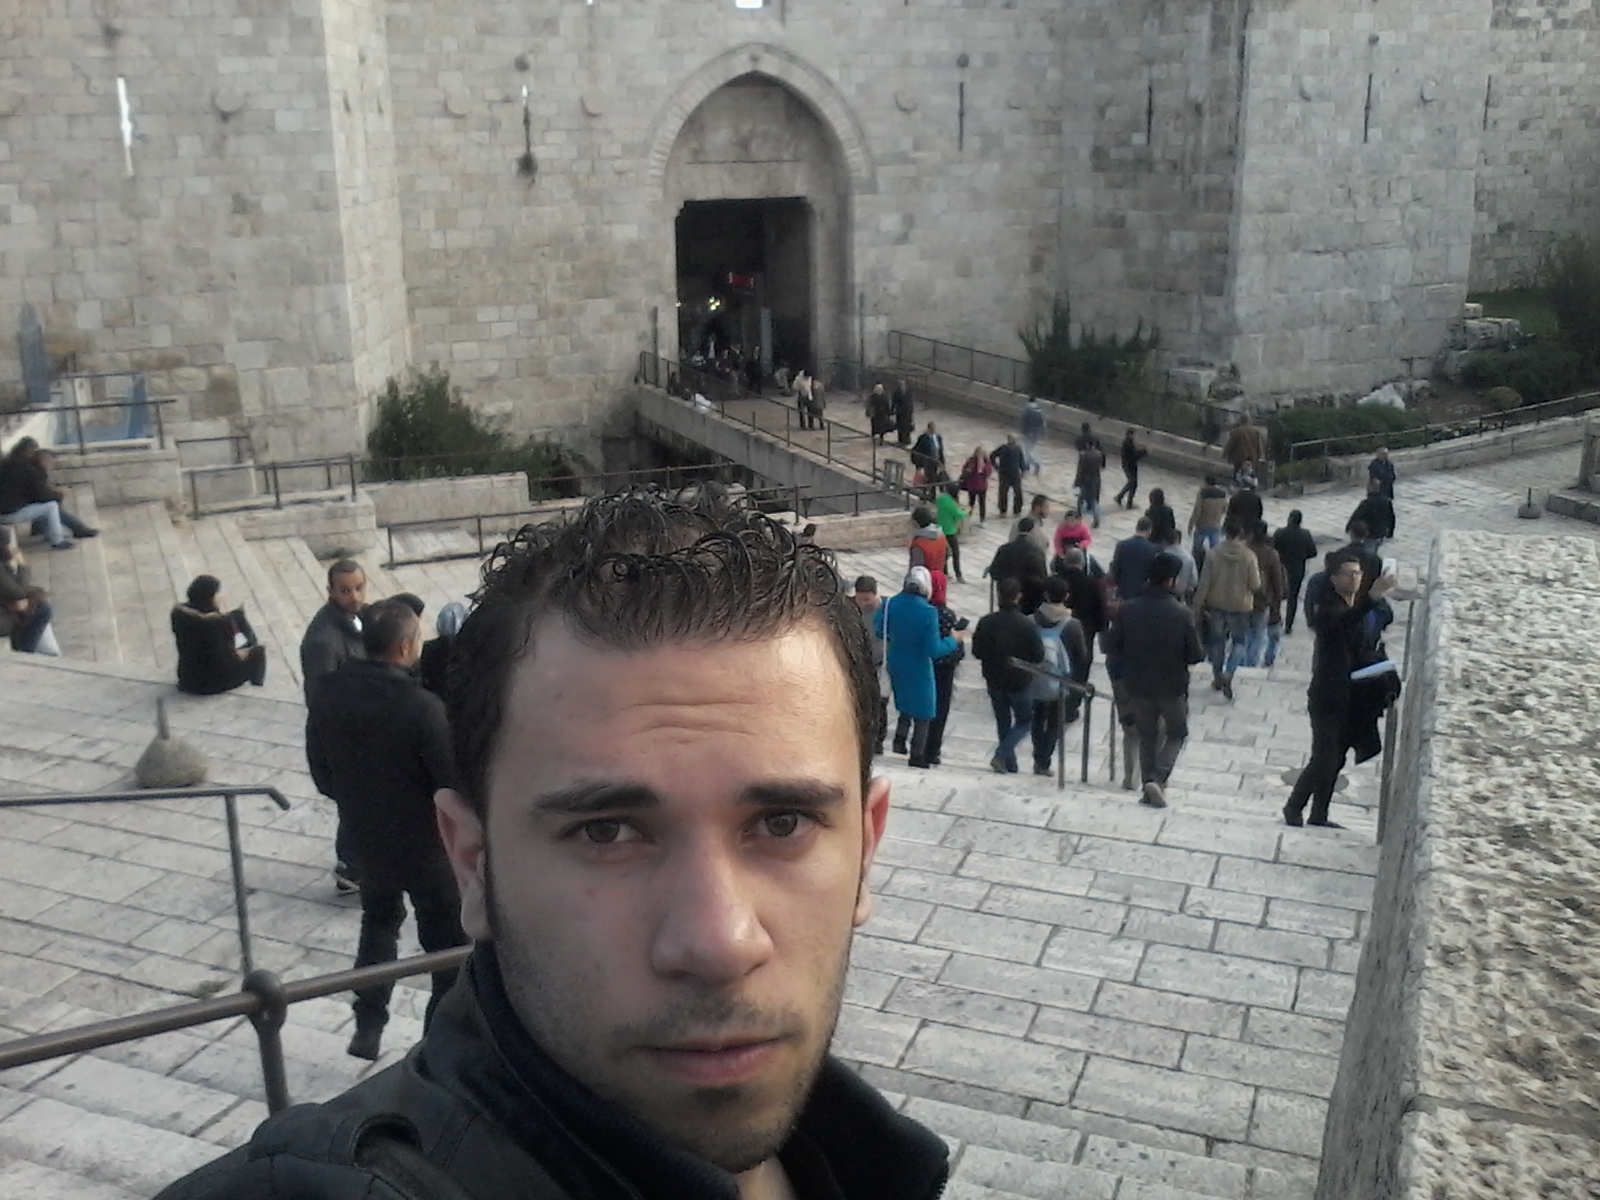 Fadi by Damascus Gate